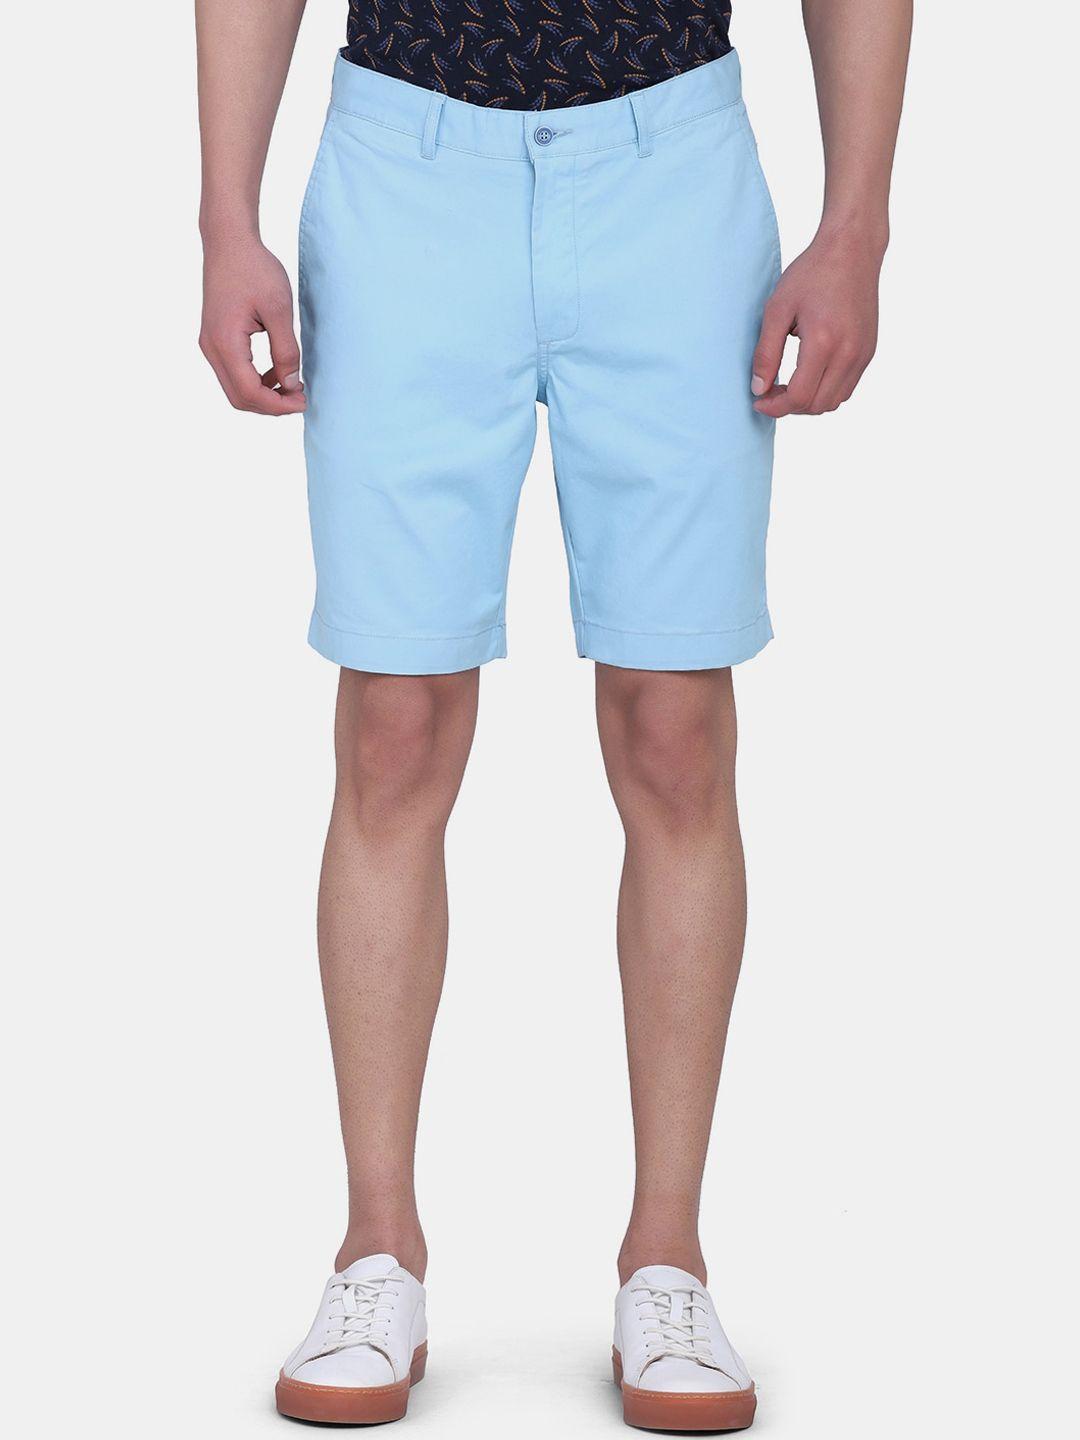 blackberrys-men-blue-slim-fit-cotton-shorts